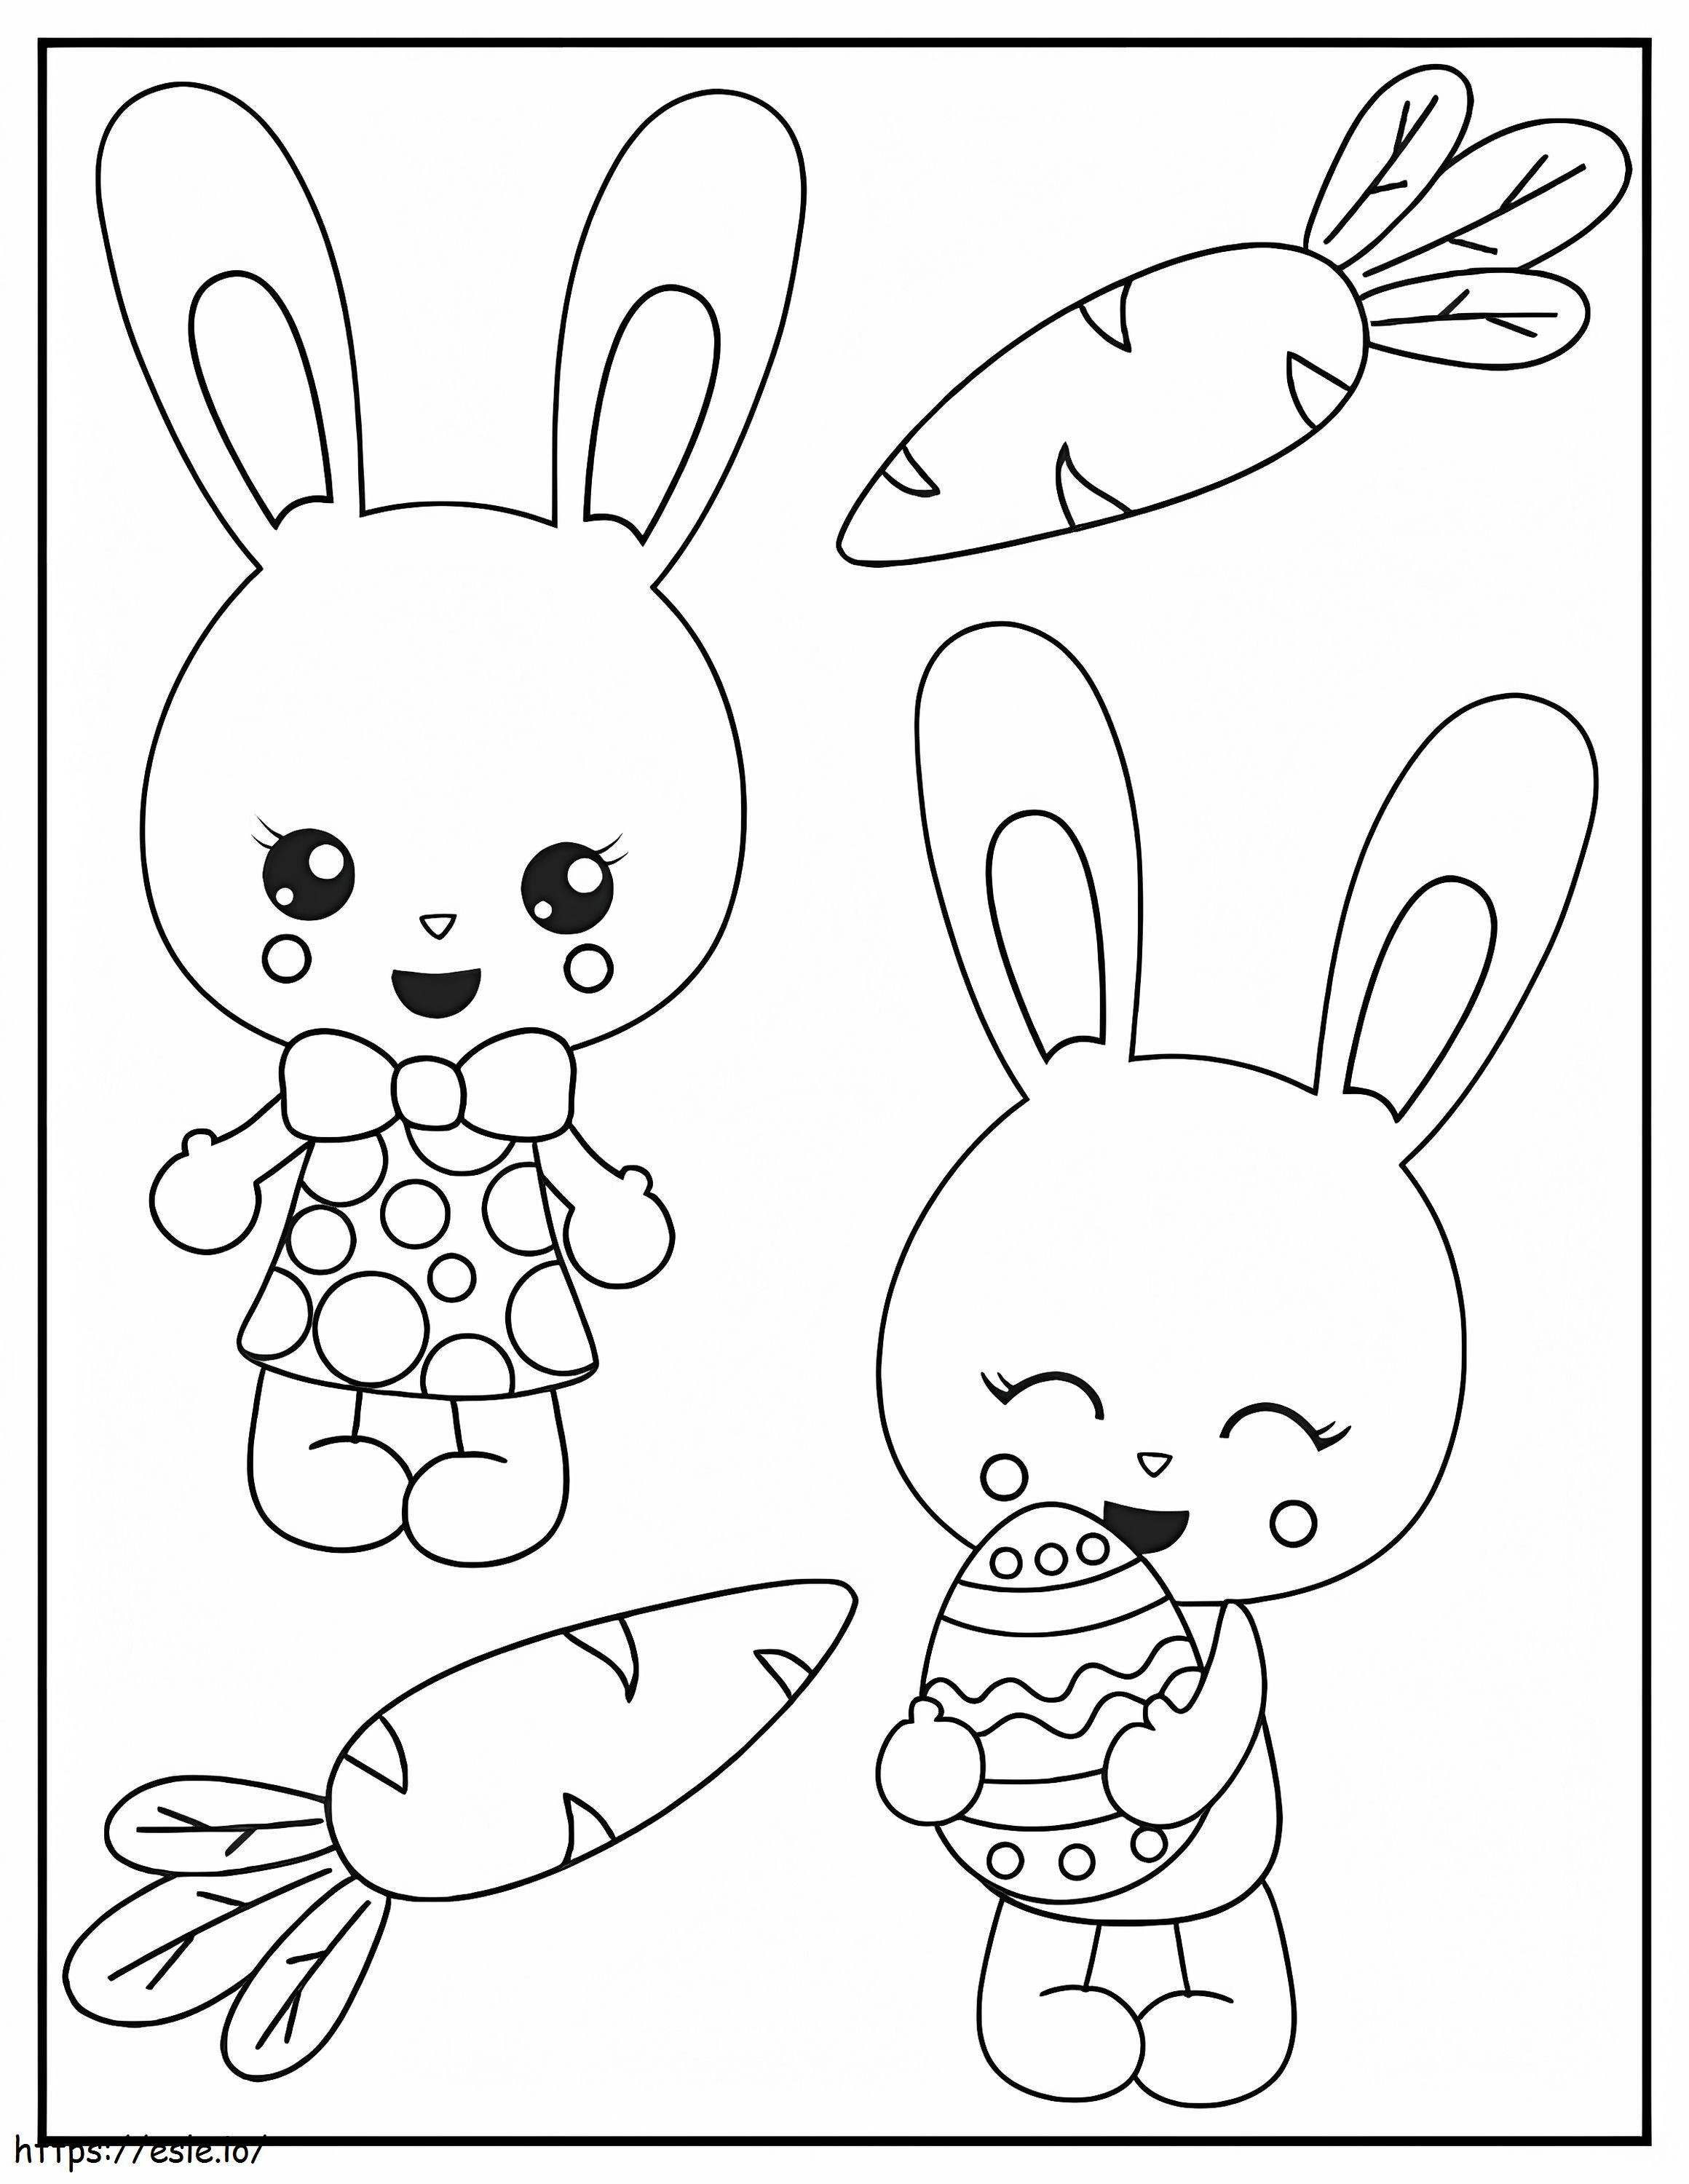 Zwei Kaninchen mit Karotte und Osterei ausmalbilder